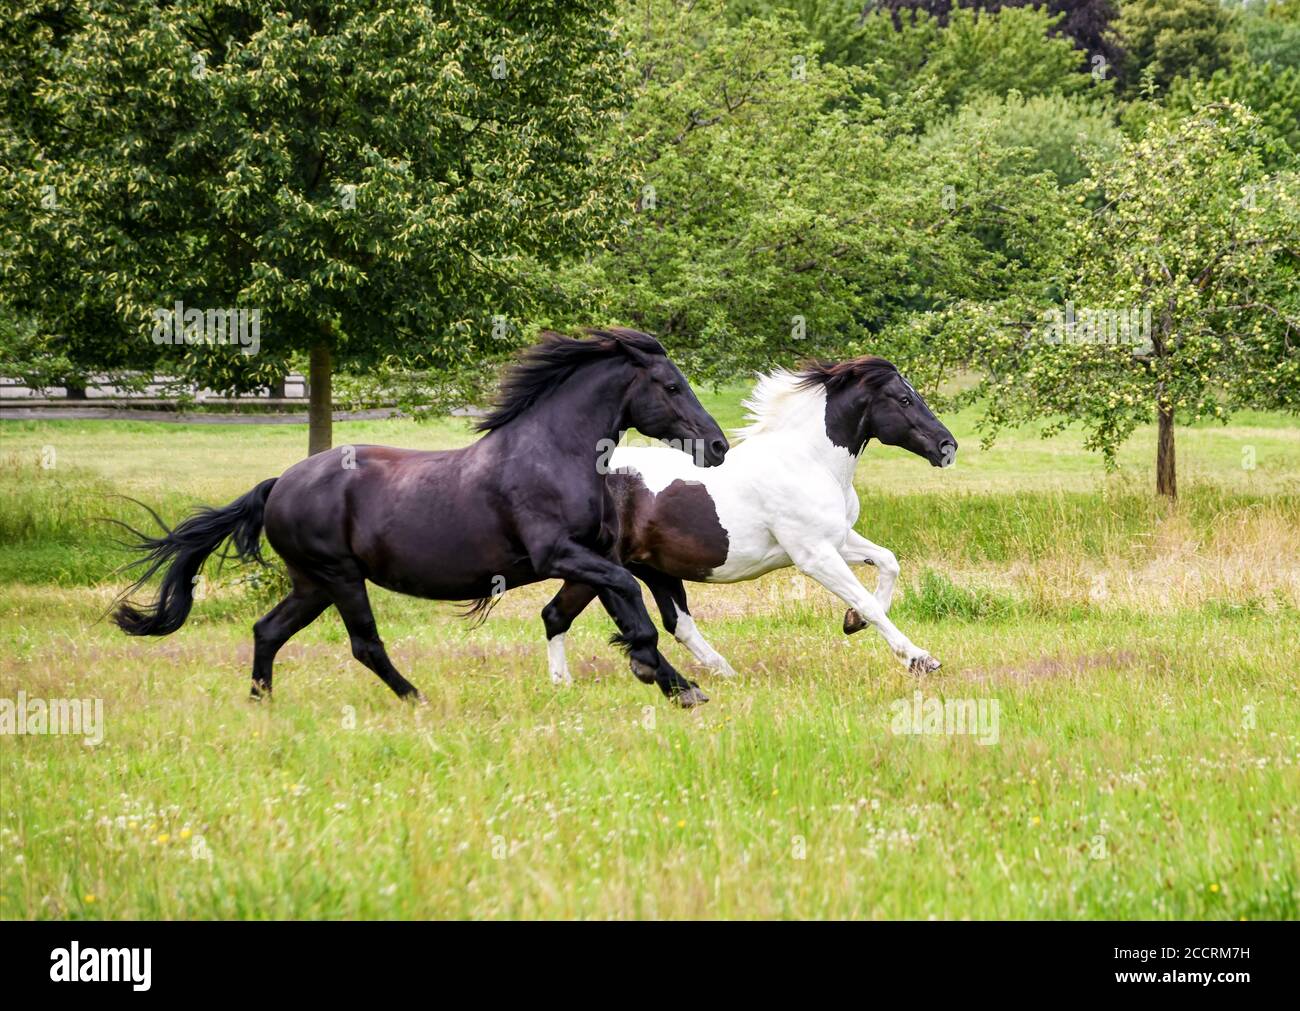 Zwei weibliche Pferde, Warmblutpferd barocken Typs, Barock Pinto schwarz und schwarz-weiß Tobiano gemustert, laufen bei einem vollen Galopp in einem grünen Gras Meado Stockfoto